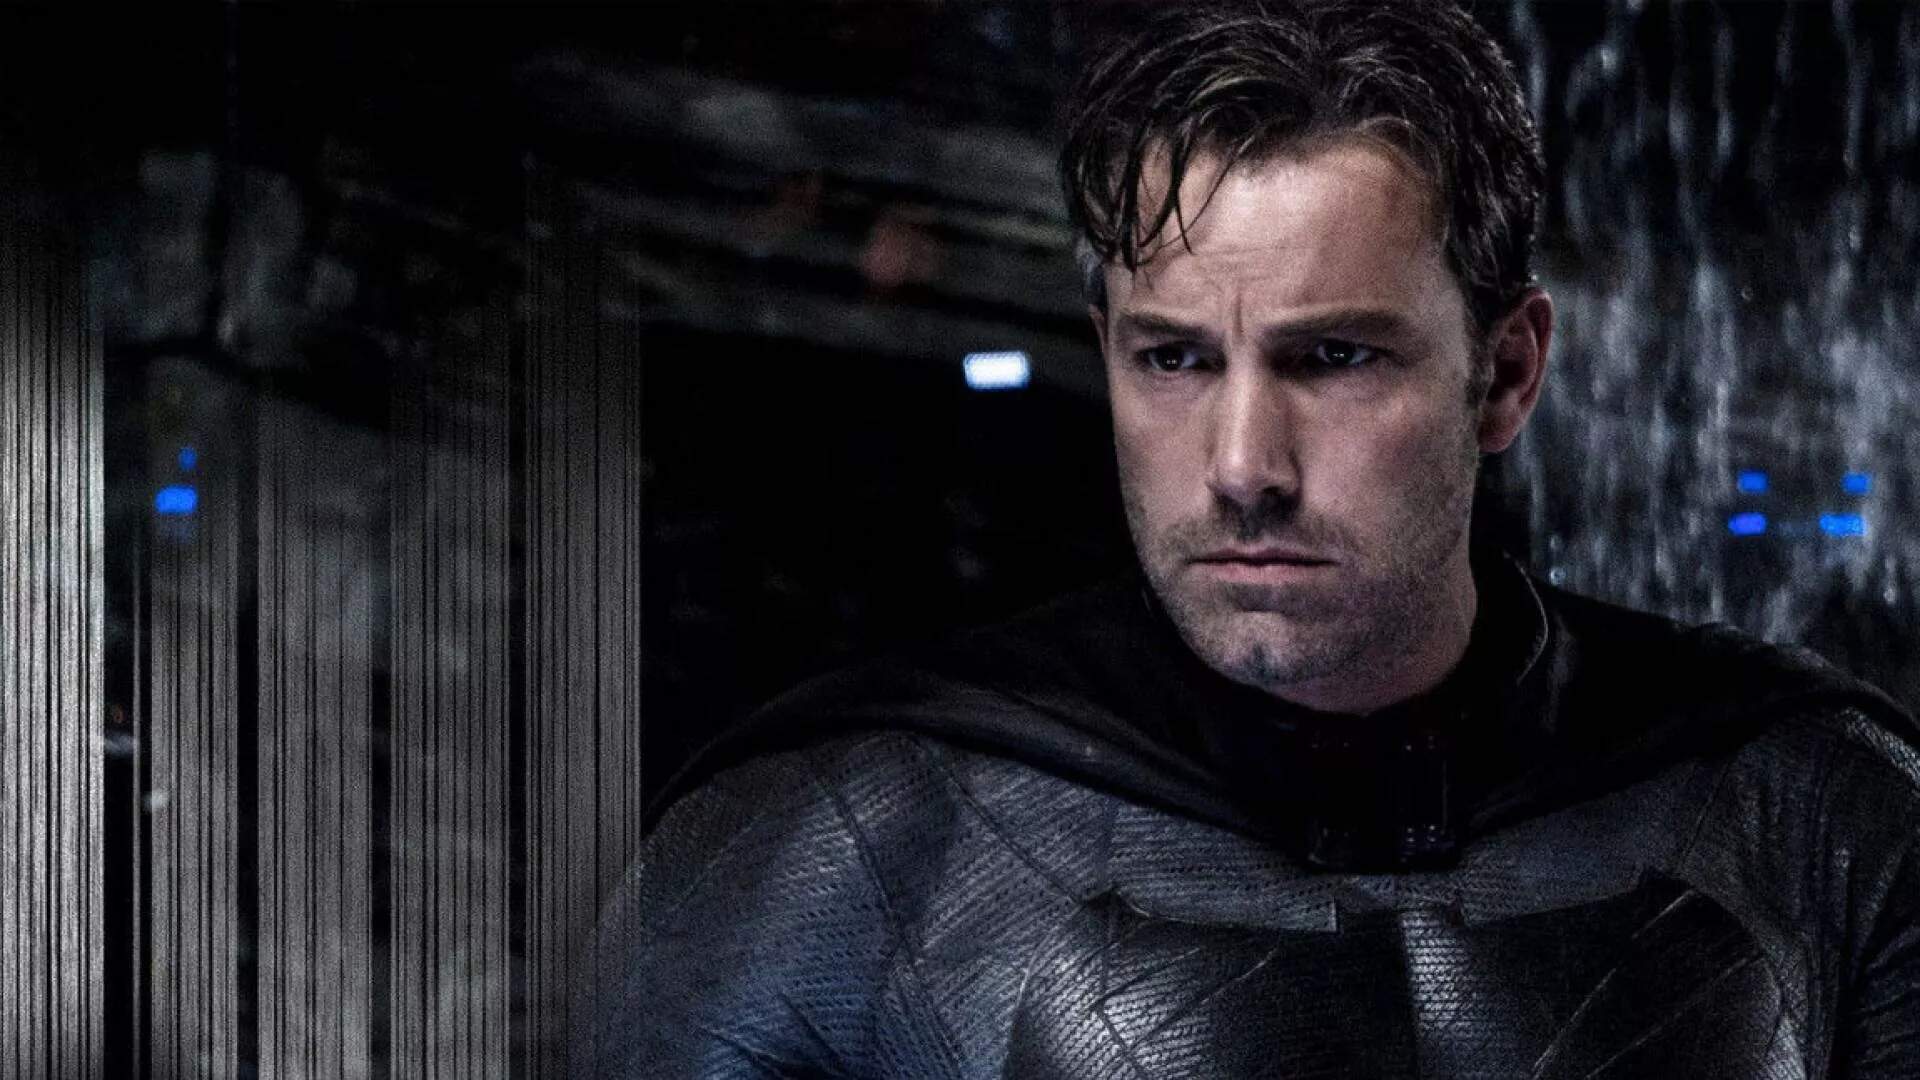 Ben Affleck afirma que não dirigirá o próximo Batman: “Não estou interessado nisso” - Metropolitana FM